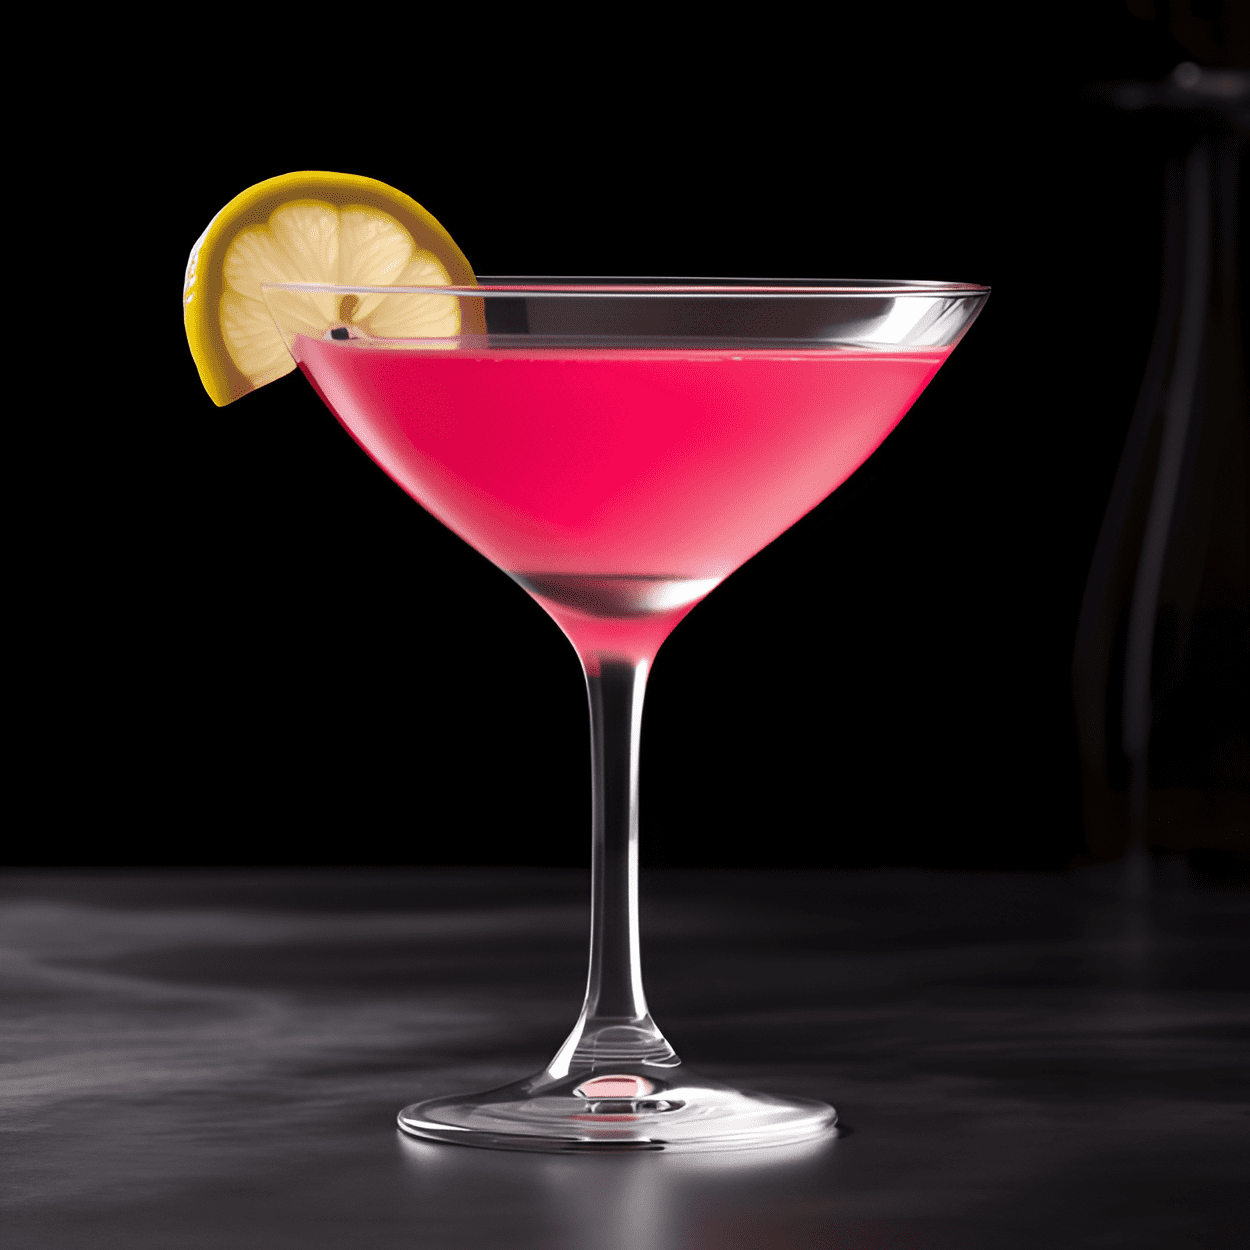 Pink Martini Cóctel Receta - El Pink Martini tiene un sabor afrutado y ligeramente dulce, con un toque de acidez del jugo de limón. Es un cóctel bien equilibrado que es refrescante y sofisticado.